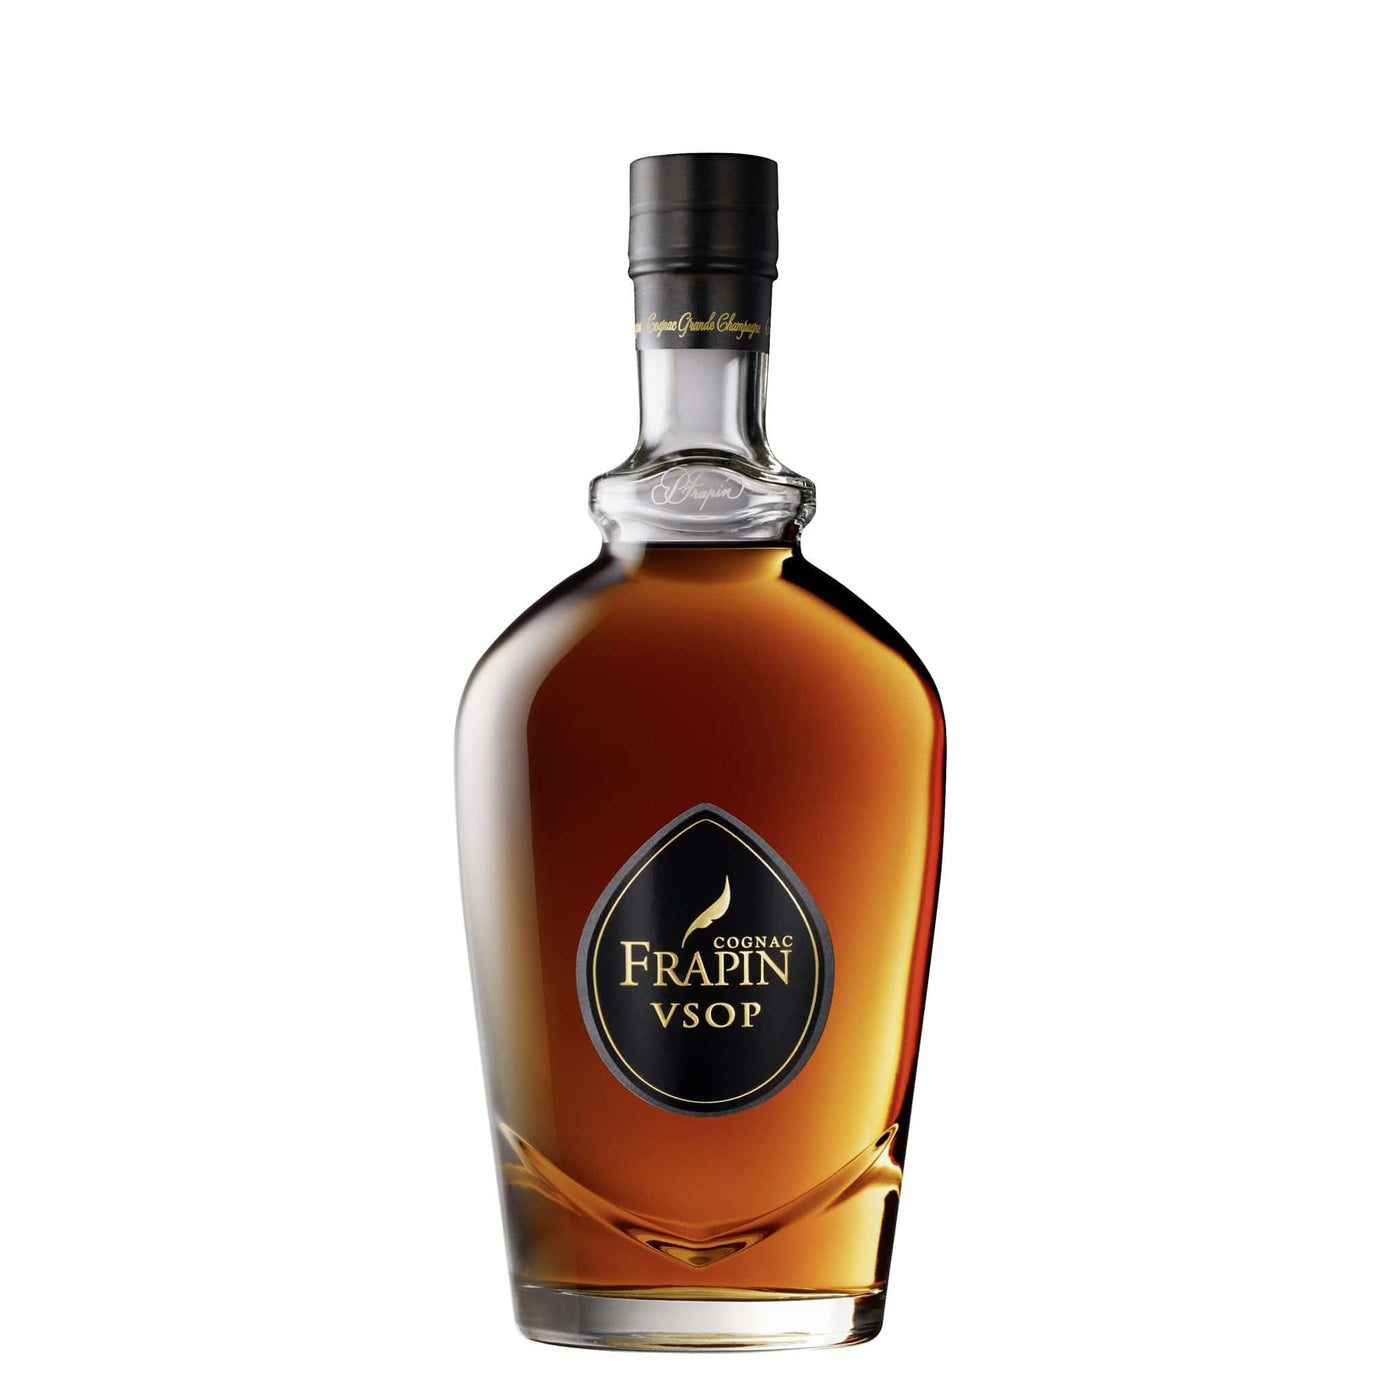 Frapin VSOP Cognac - Spiritly